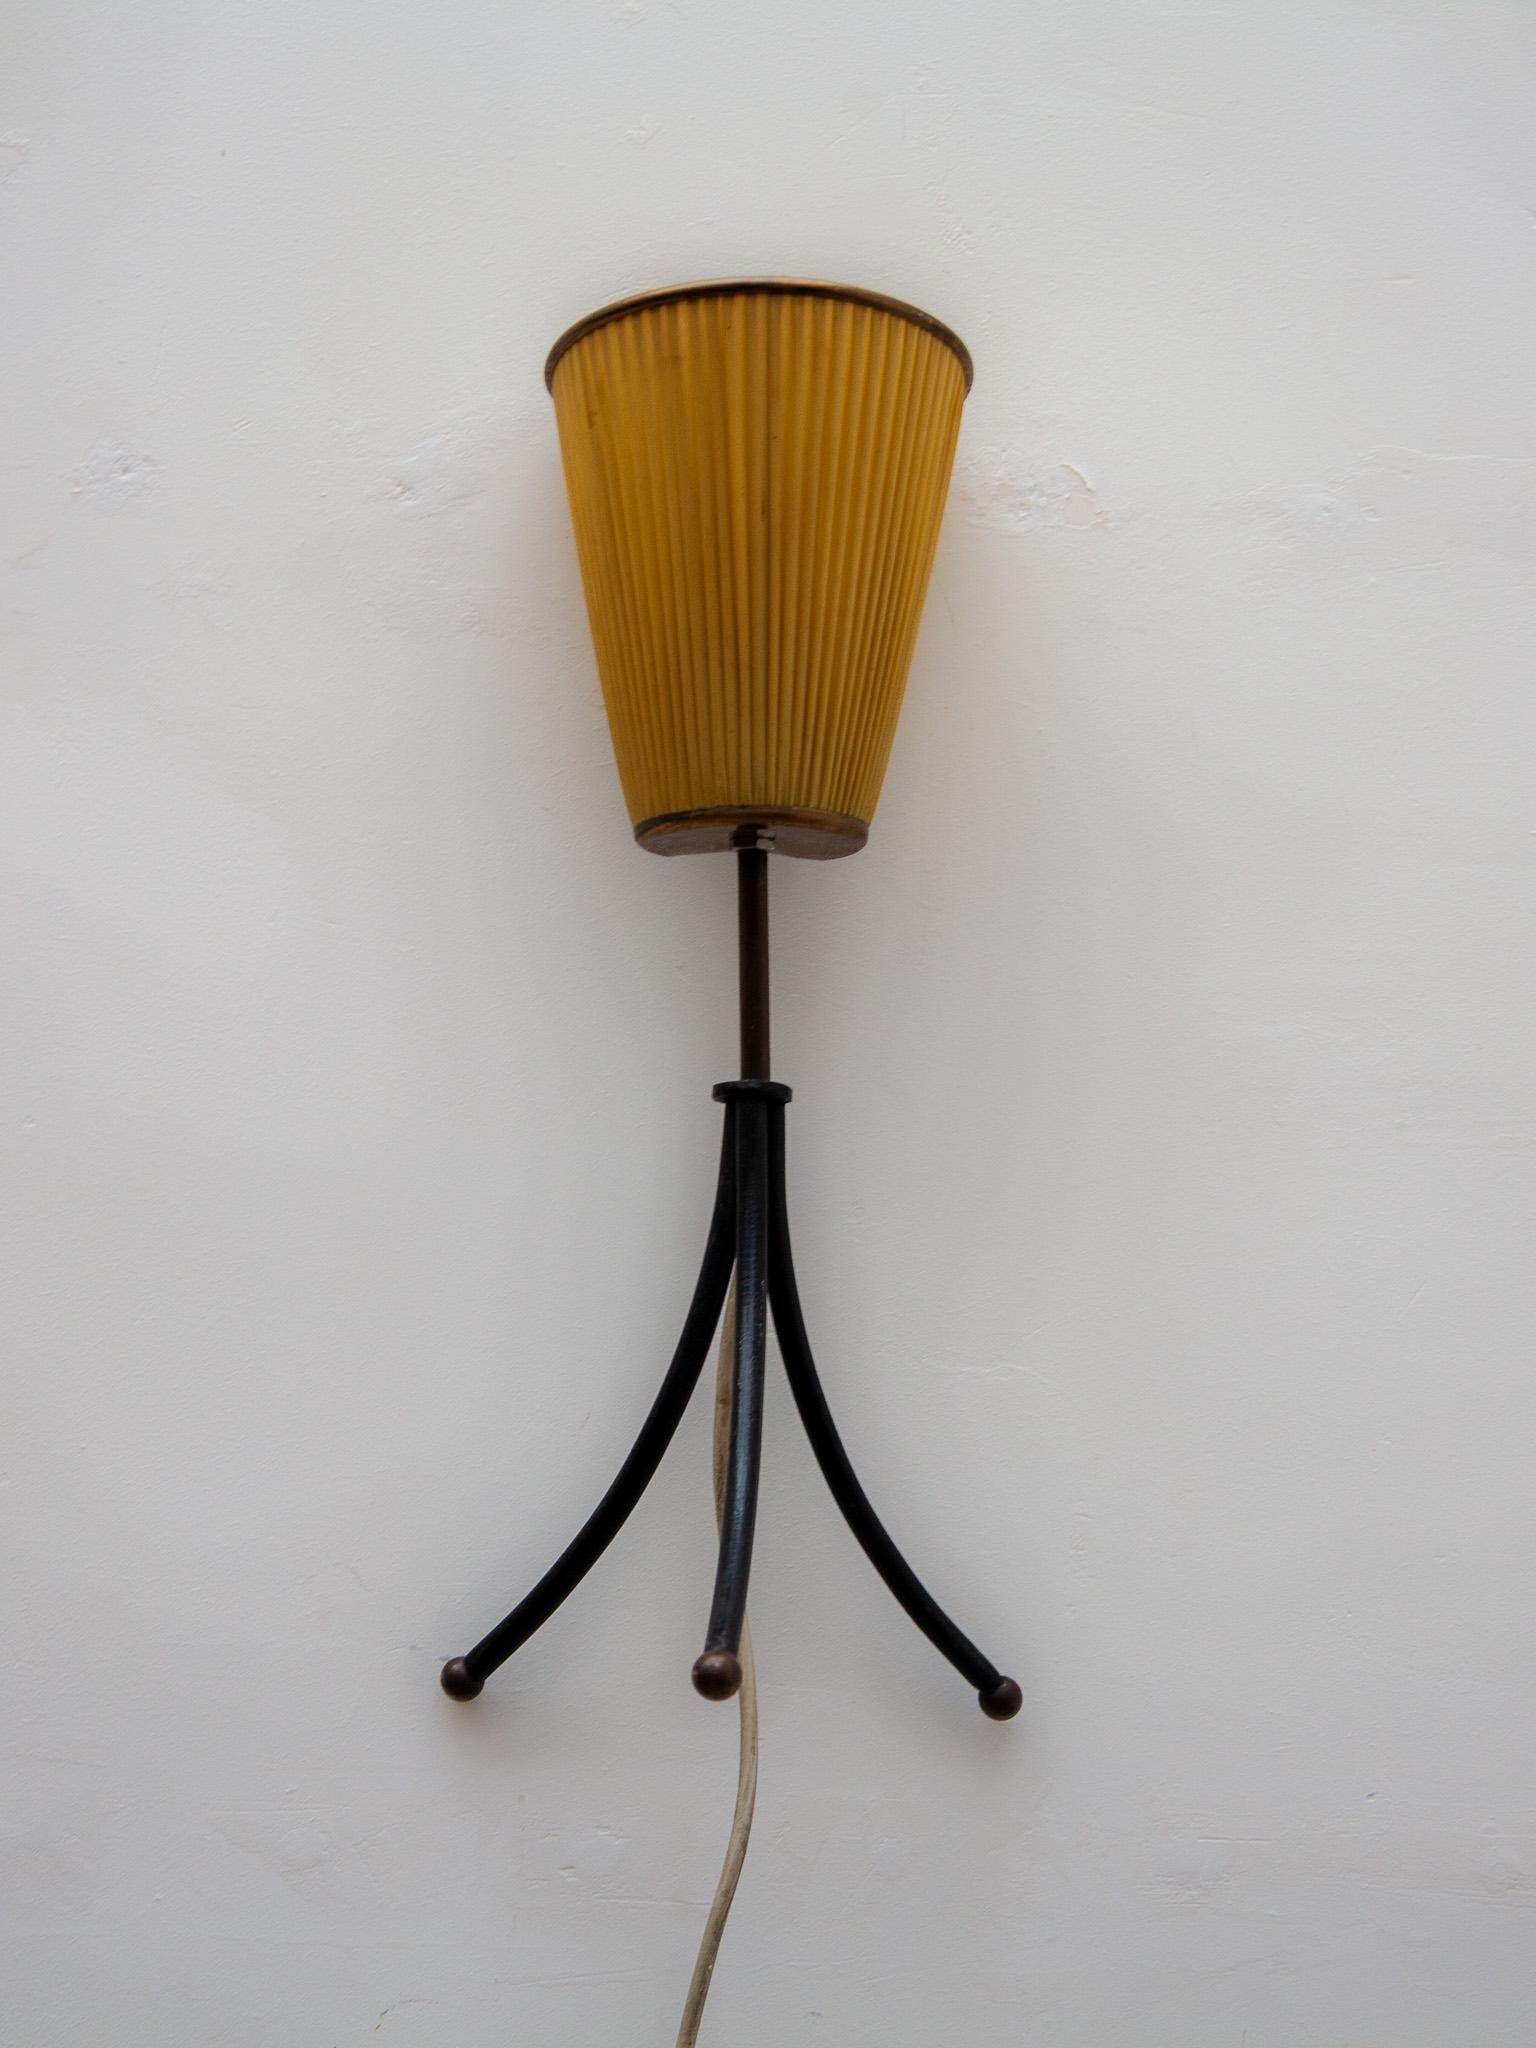 Cette lampe de table ou de chevet des années 1950 est dotée d'un trépied en métal laqué noir et peut être accrochée au mur en tant qu'applique. La lampe est dotée de l'abat-jour d'origine en soie fine pour une lumière chaude et magnifique. La pièce